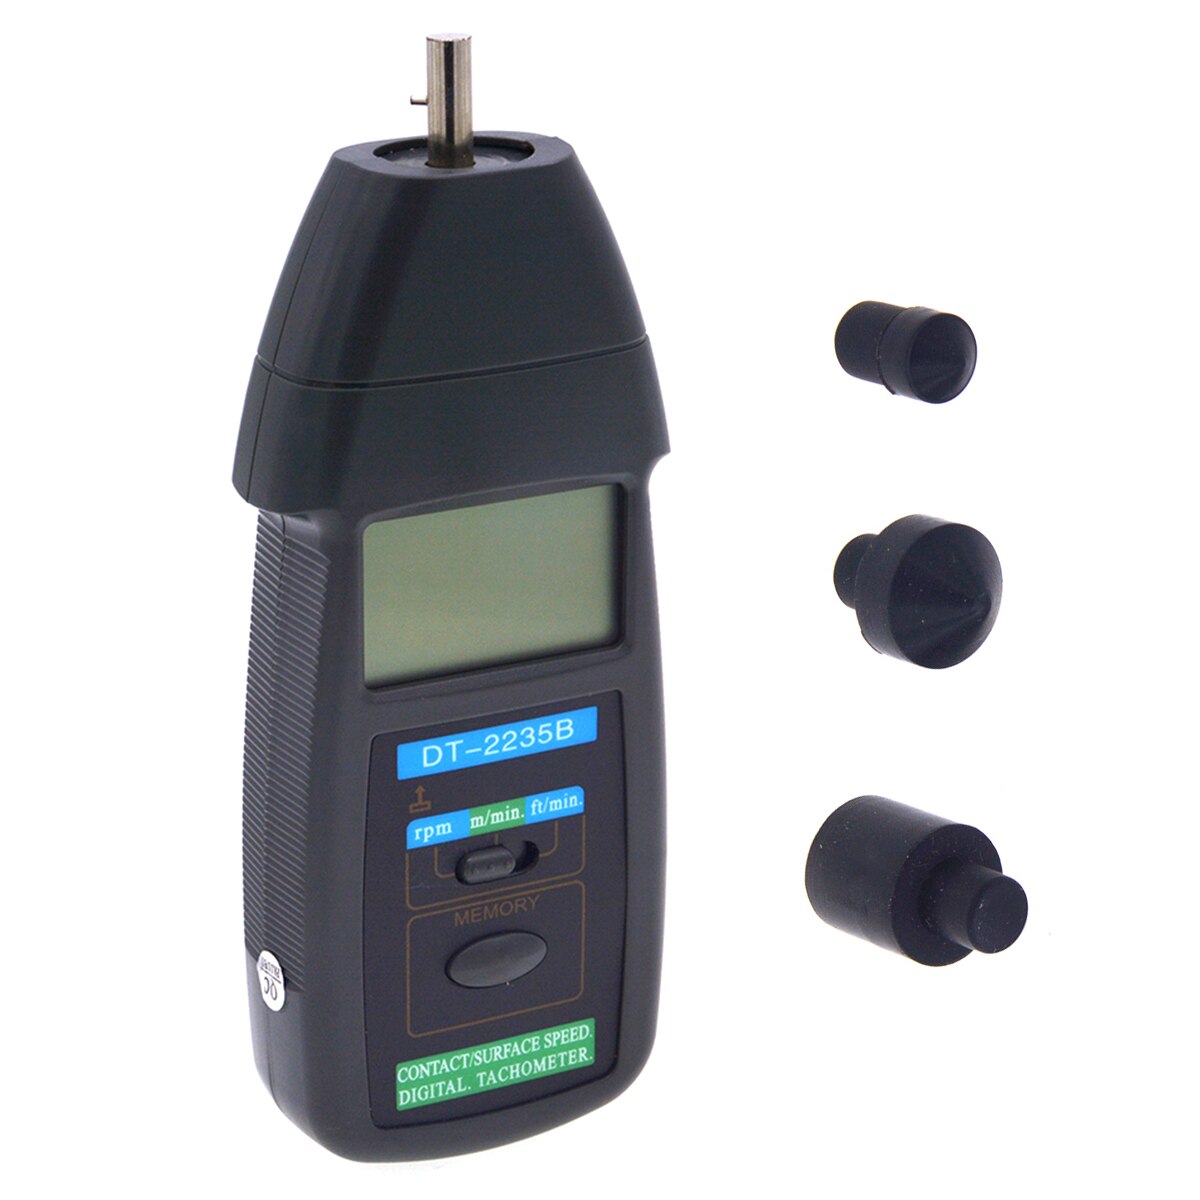 DT-2235B Digital Contact Tachometer RPM Tester Meter Motor Speed Gauge Meter Testen Handheld Optische